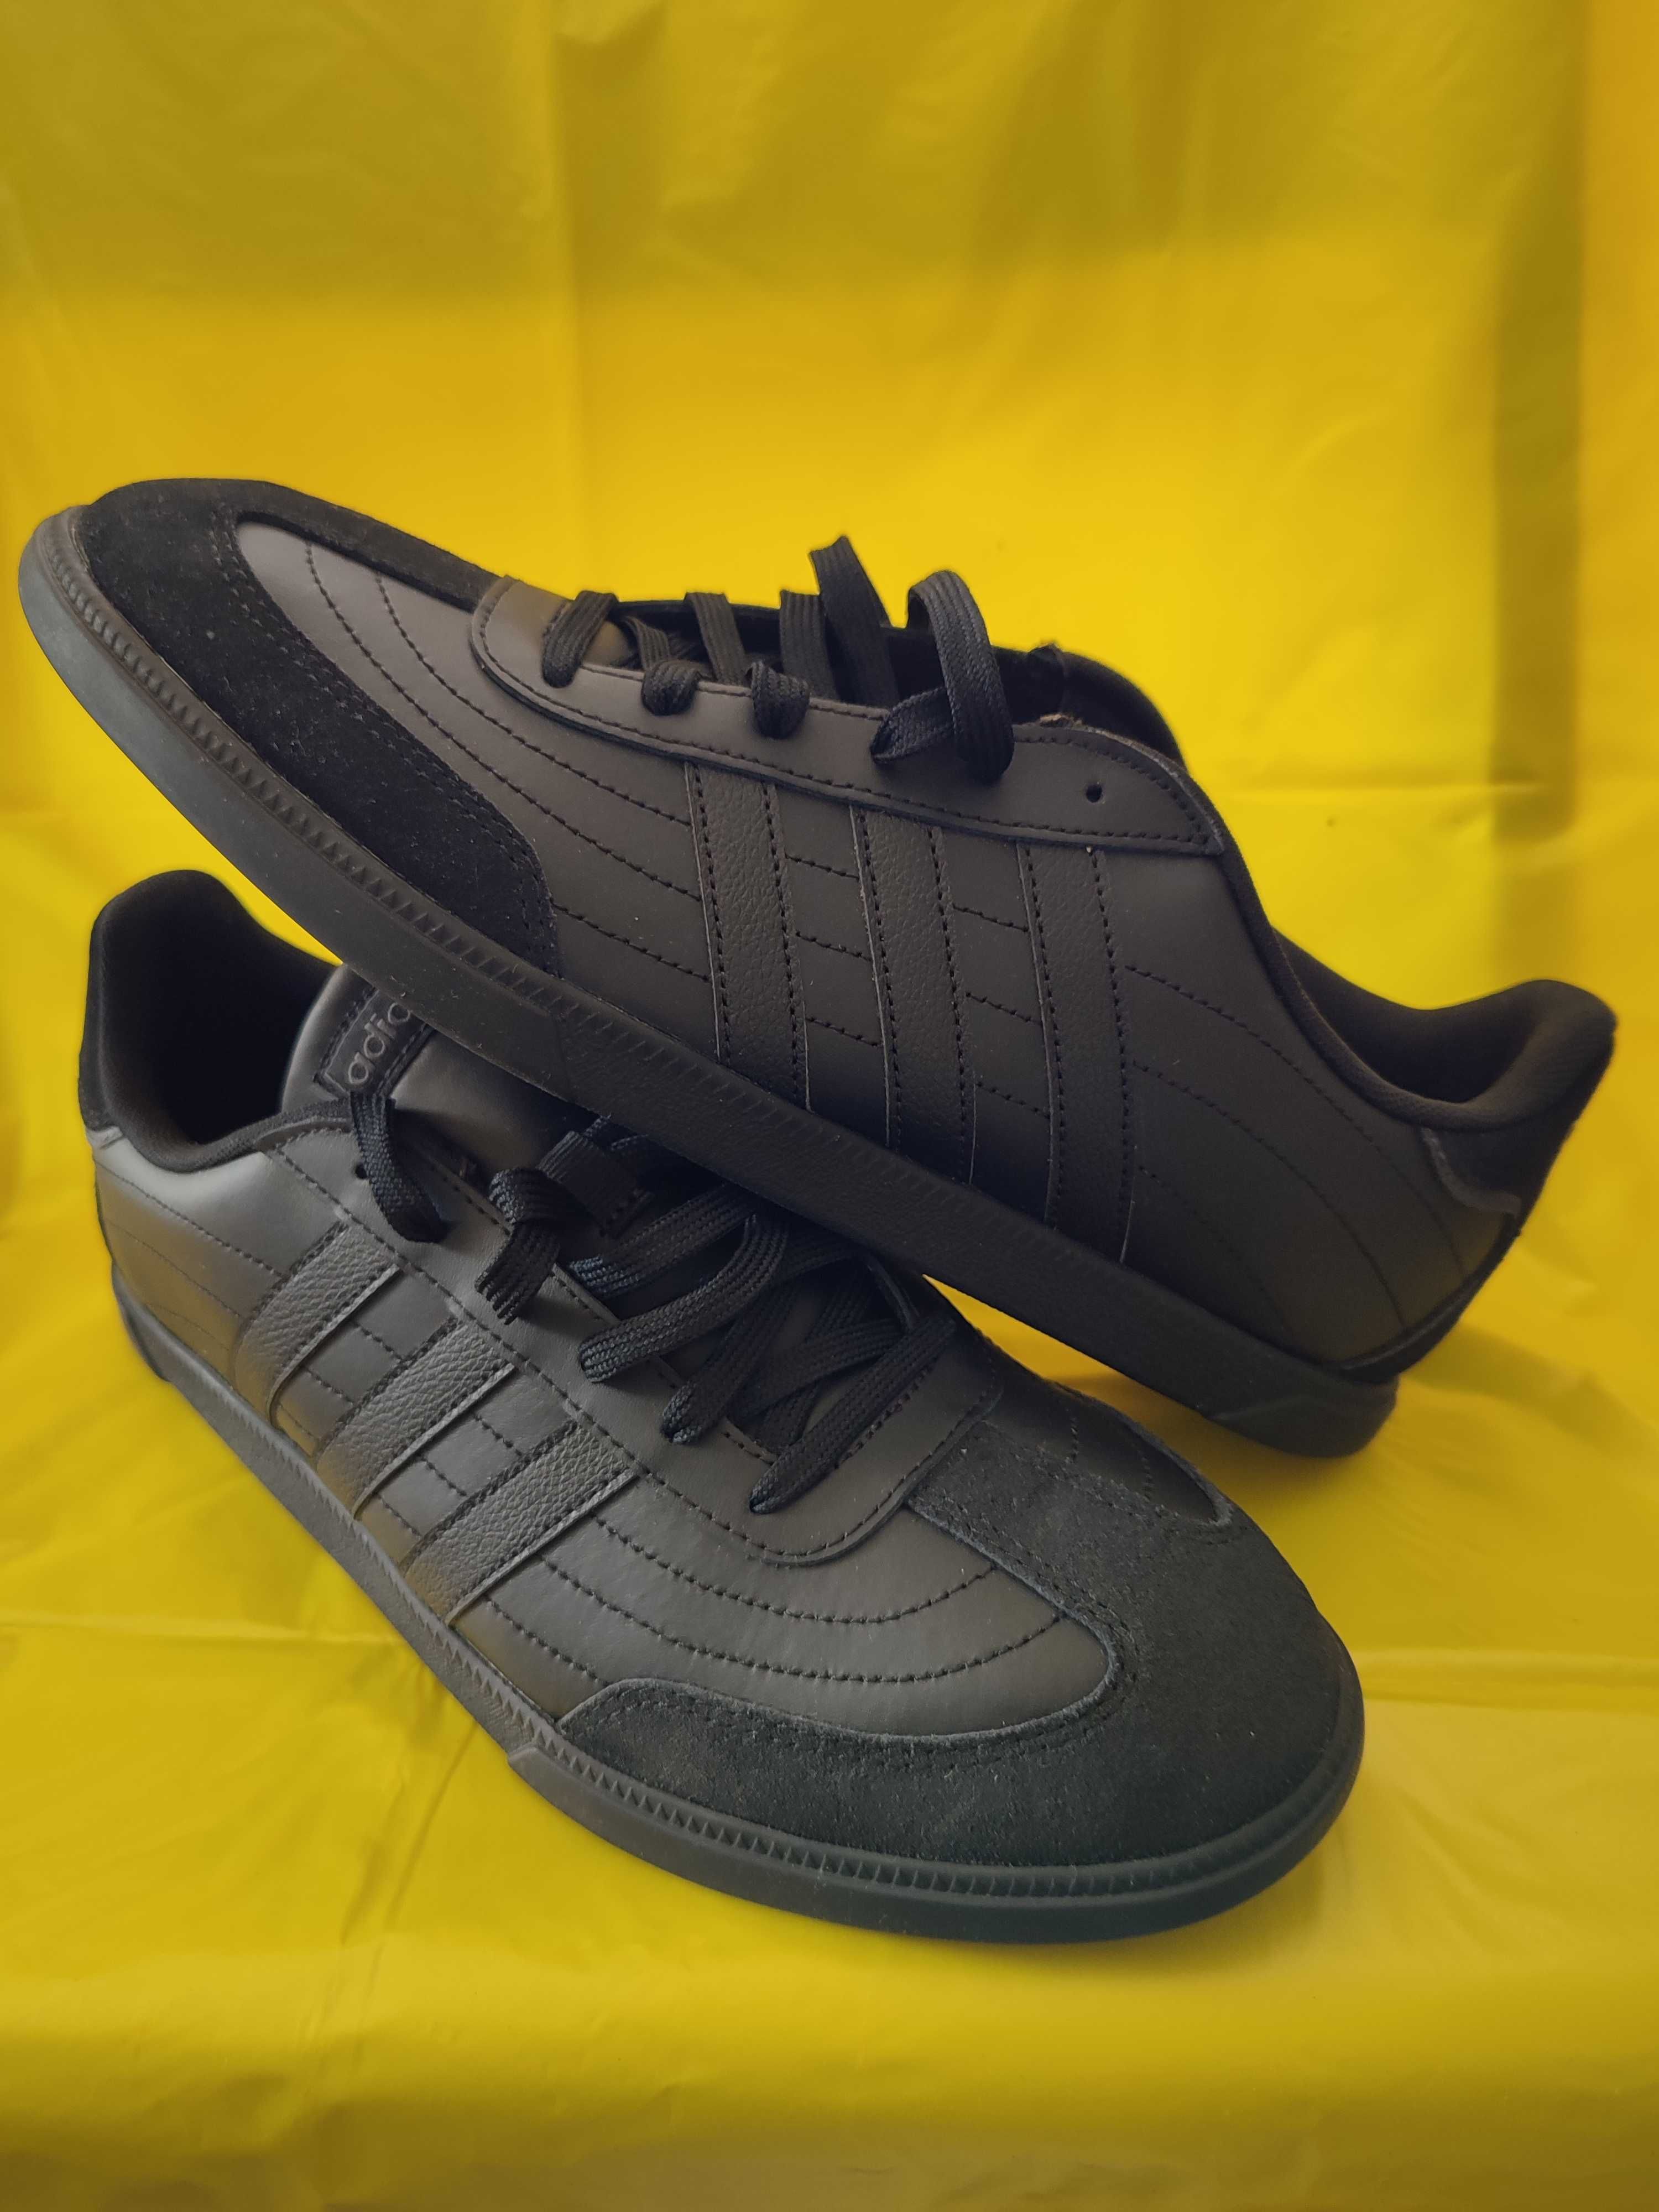 Кросівки Adidas OKOSU H02041 розміри у наявності